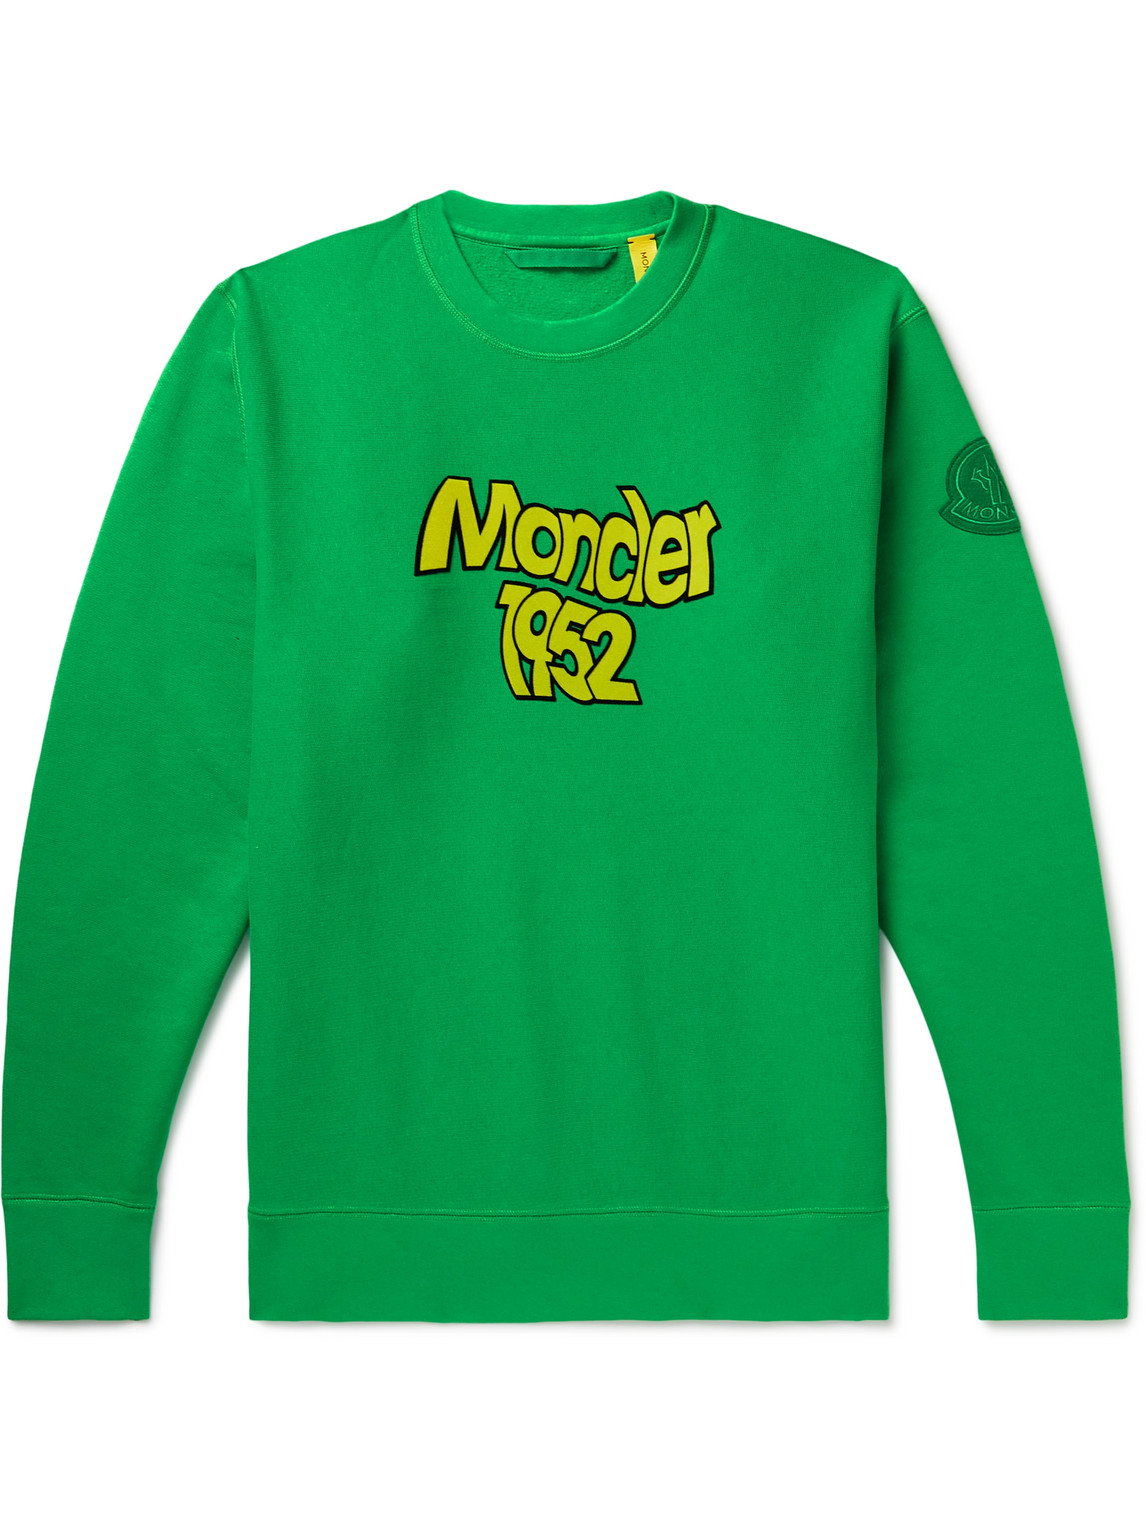 Moncler Genius 2 Moncler 1952 Logo-Flocked Cotton-Jersey Sweatshirt